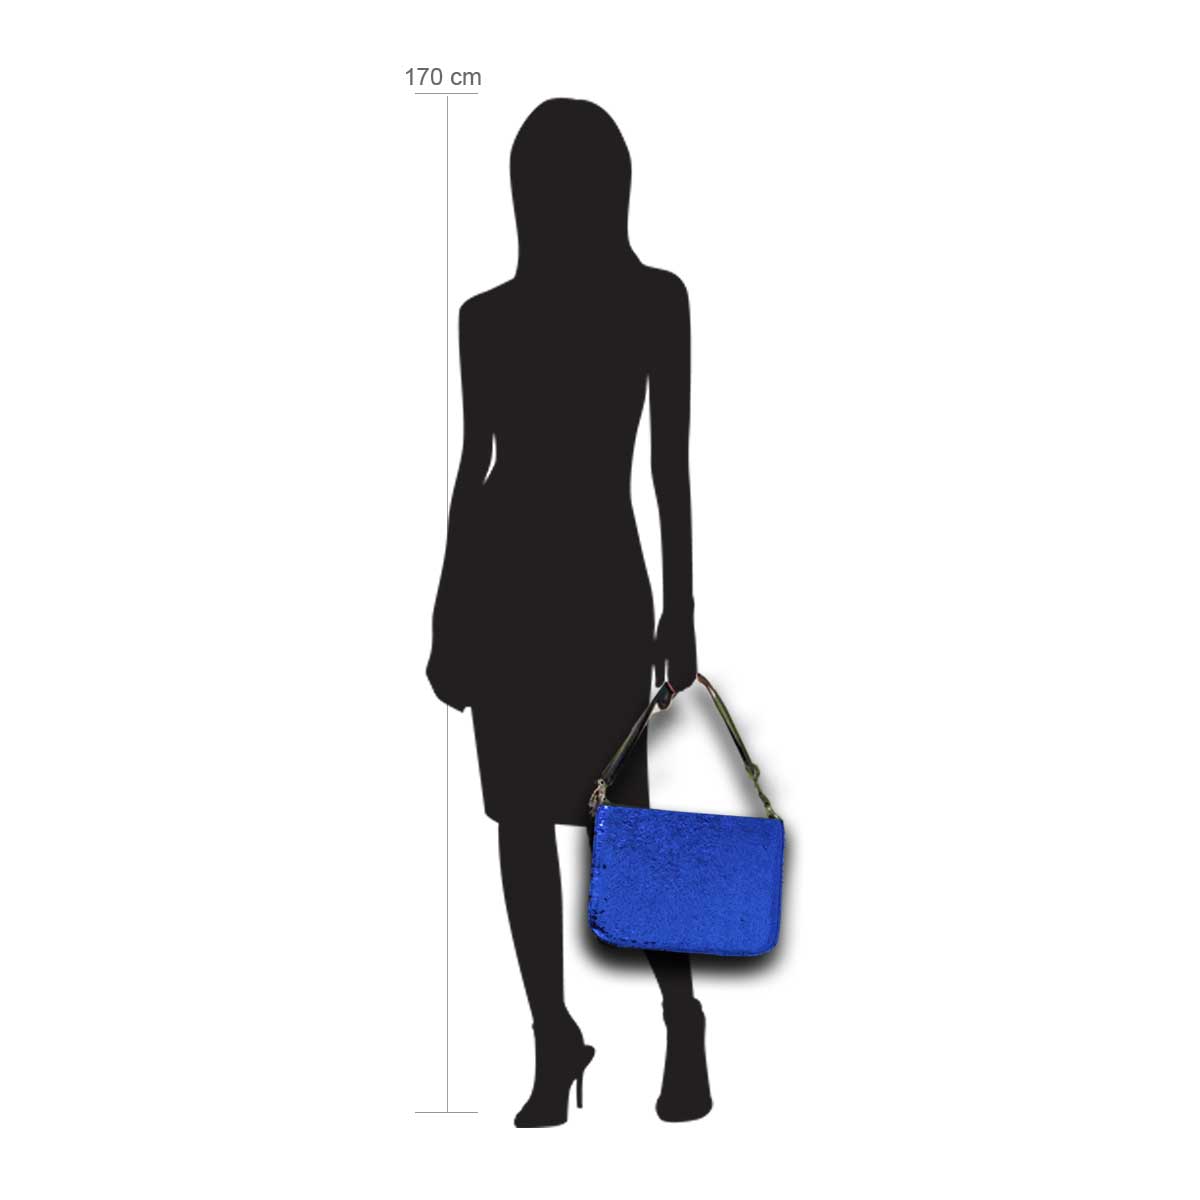 Modellpuppe 170 cm groß zeigt die Handtaschengröße an der Person Modell:Avalon